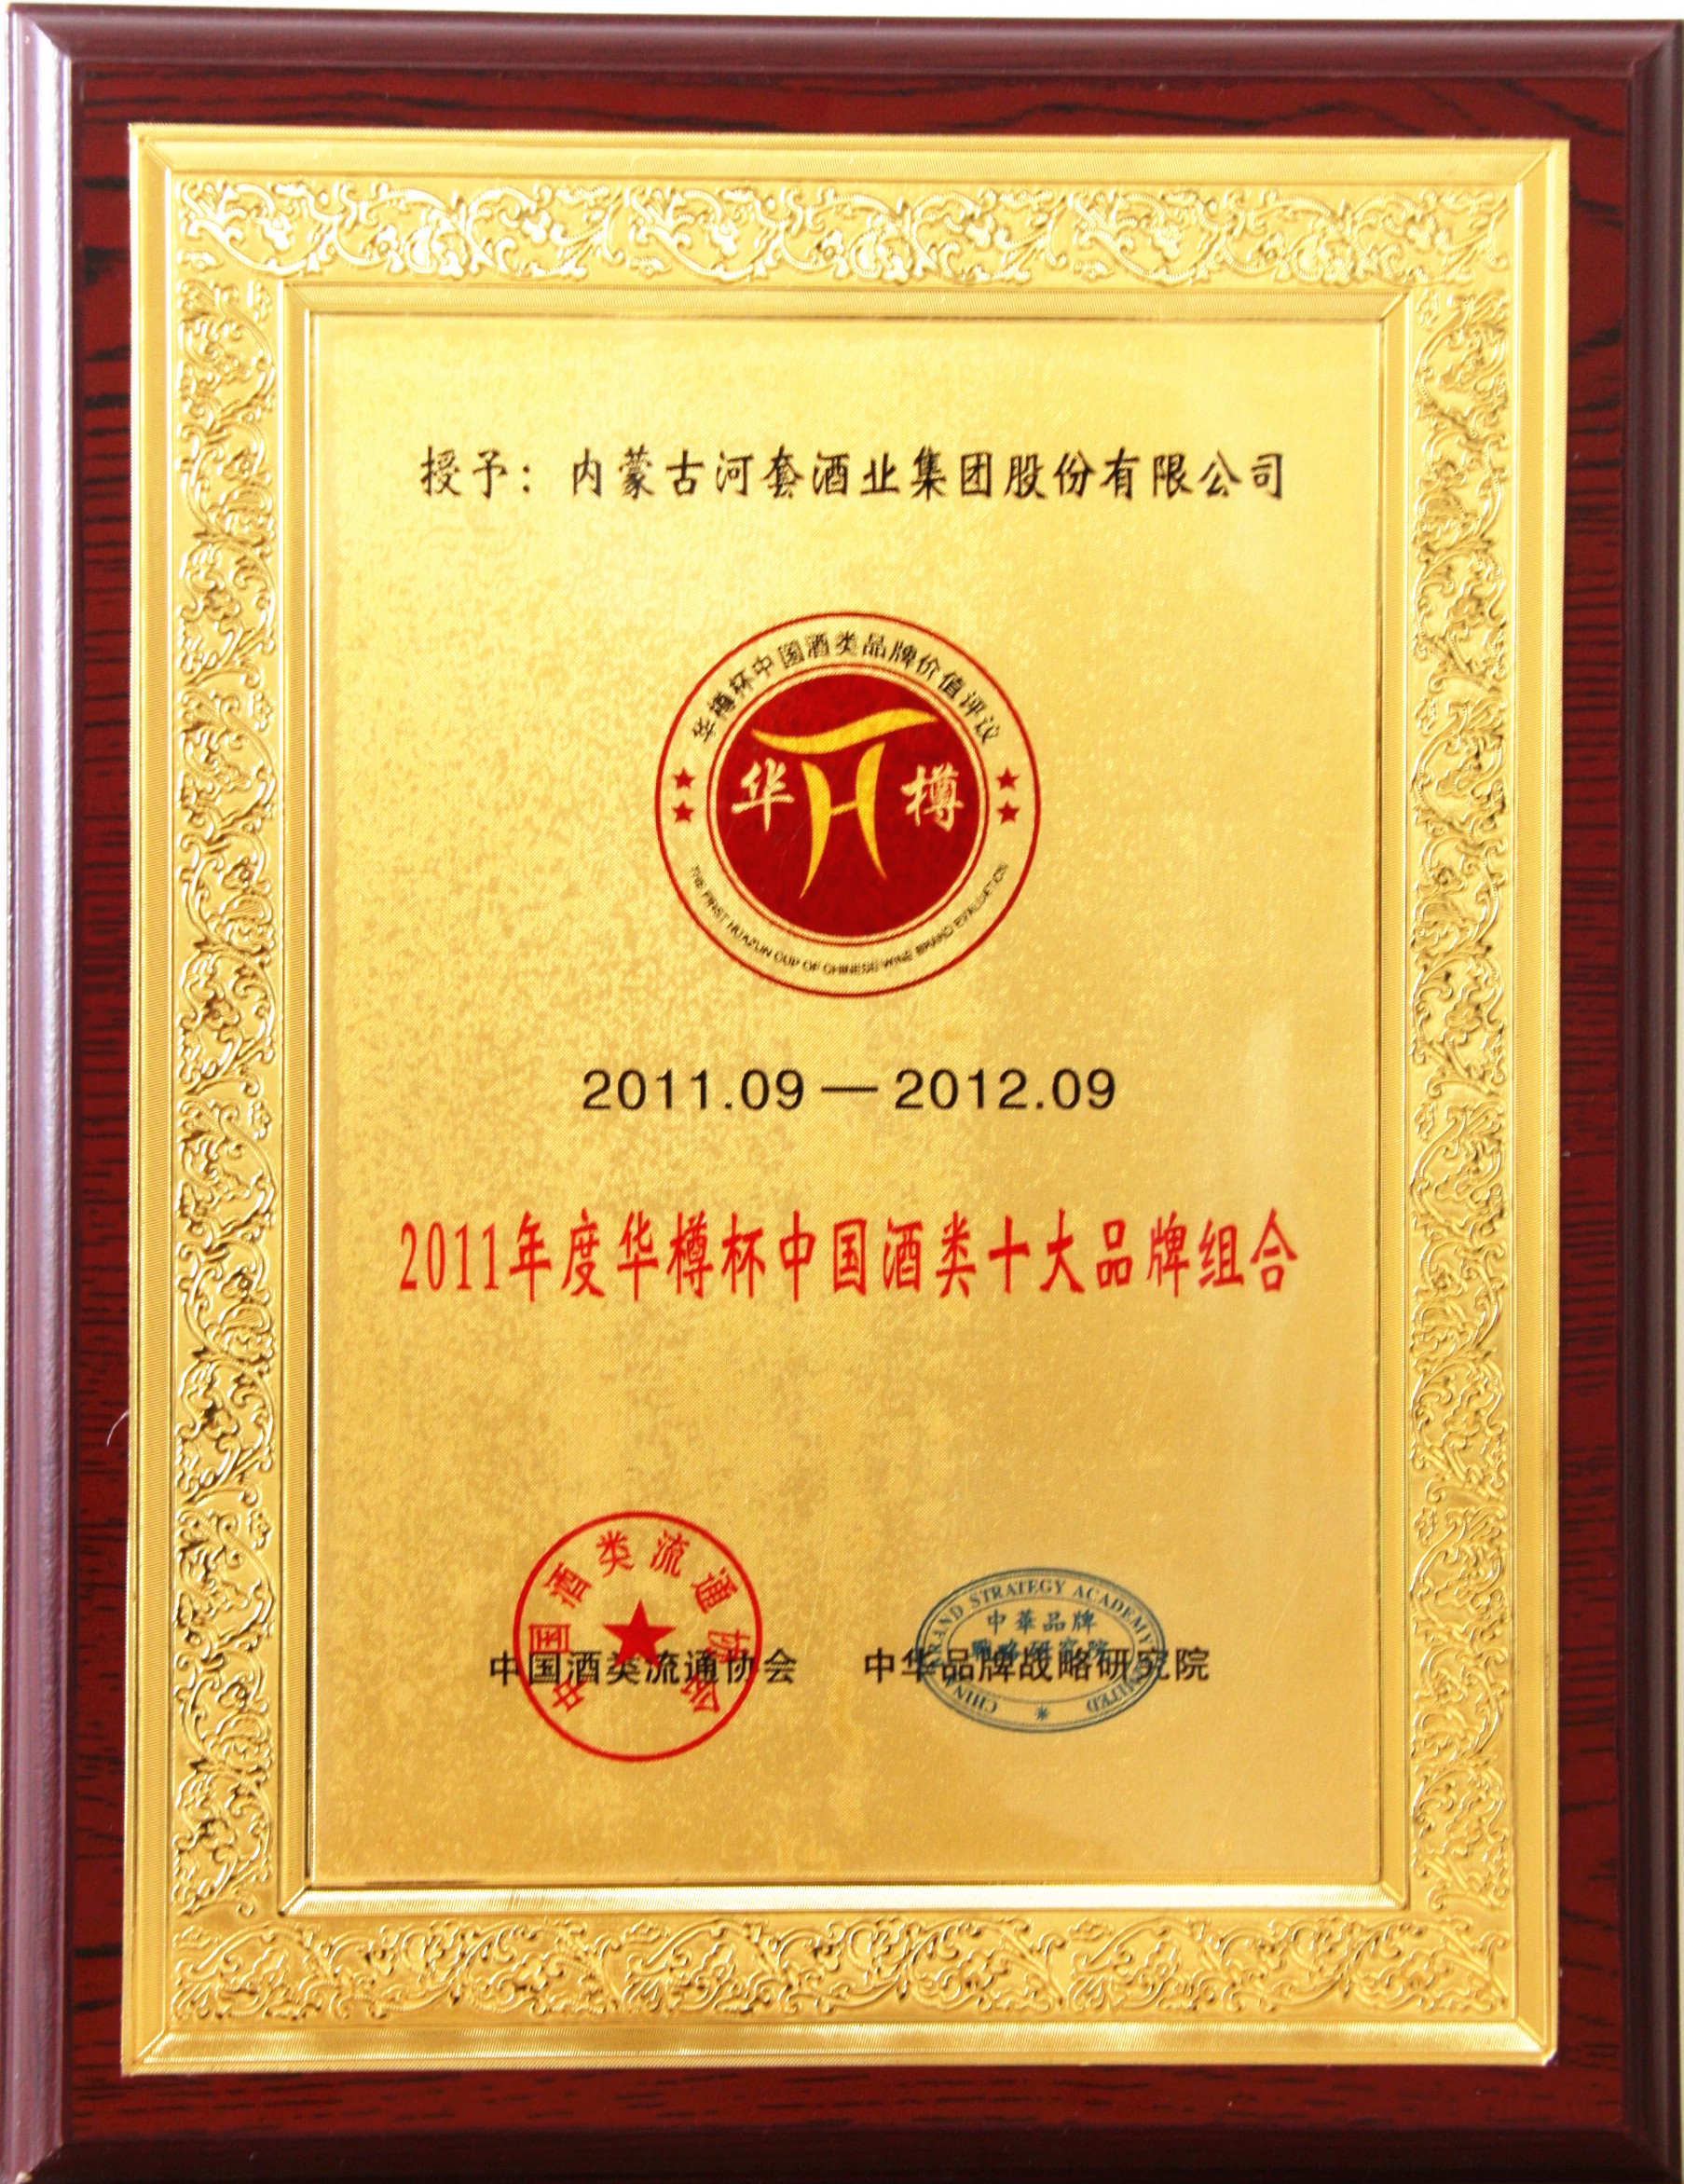 2011年度华樽杯中国酒类十大品牌组合